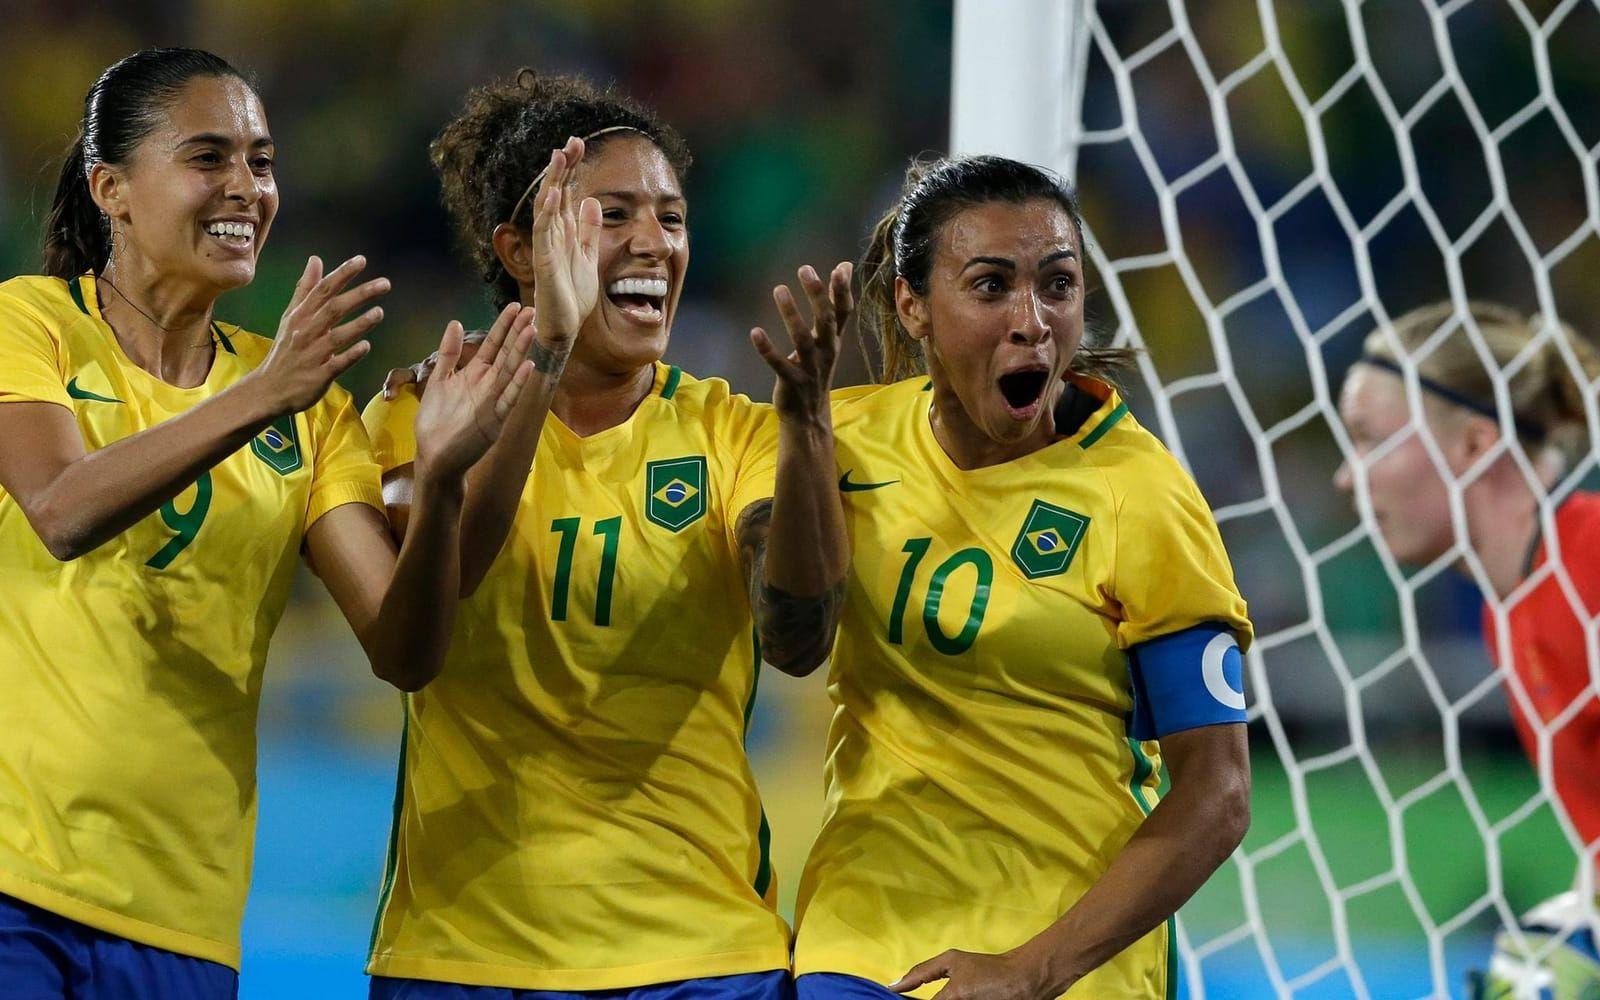 7 augusti 2016: Sverige slår Sydafrika i den öppnande gruppspelsmatchen i Rio, men pulvriseras här av hemmanationen Brasilien. Den brutala 5-1-förlusten följs upp av 0-0 mot Kina, vilket innebär att USA väntar som motståndare i kvartsfinalen. Foto: TT